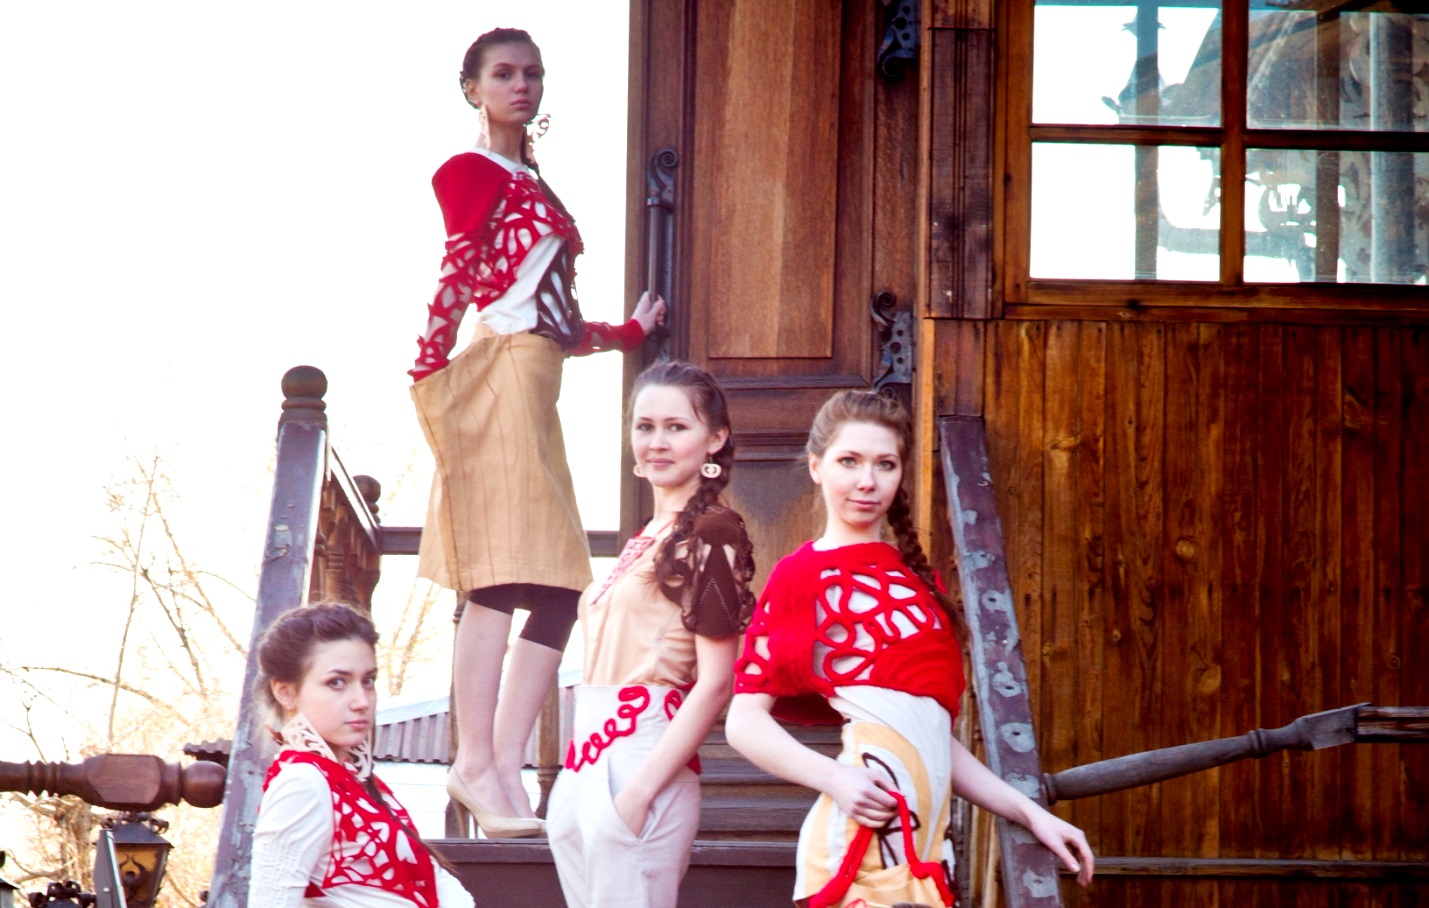 АлтГУ запатентовал коллекцию одежды по мотивам деревянного зодчества Алтая